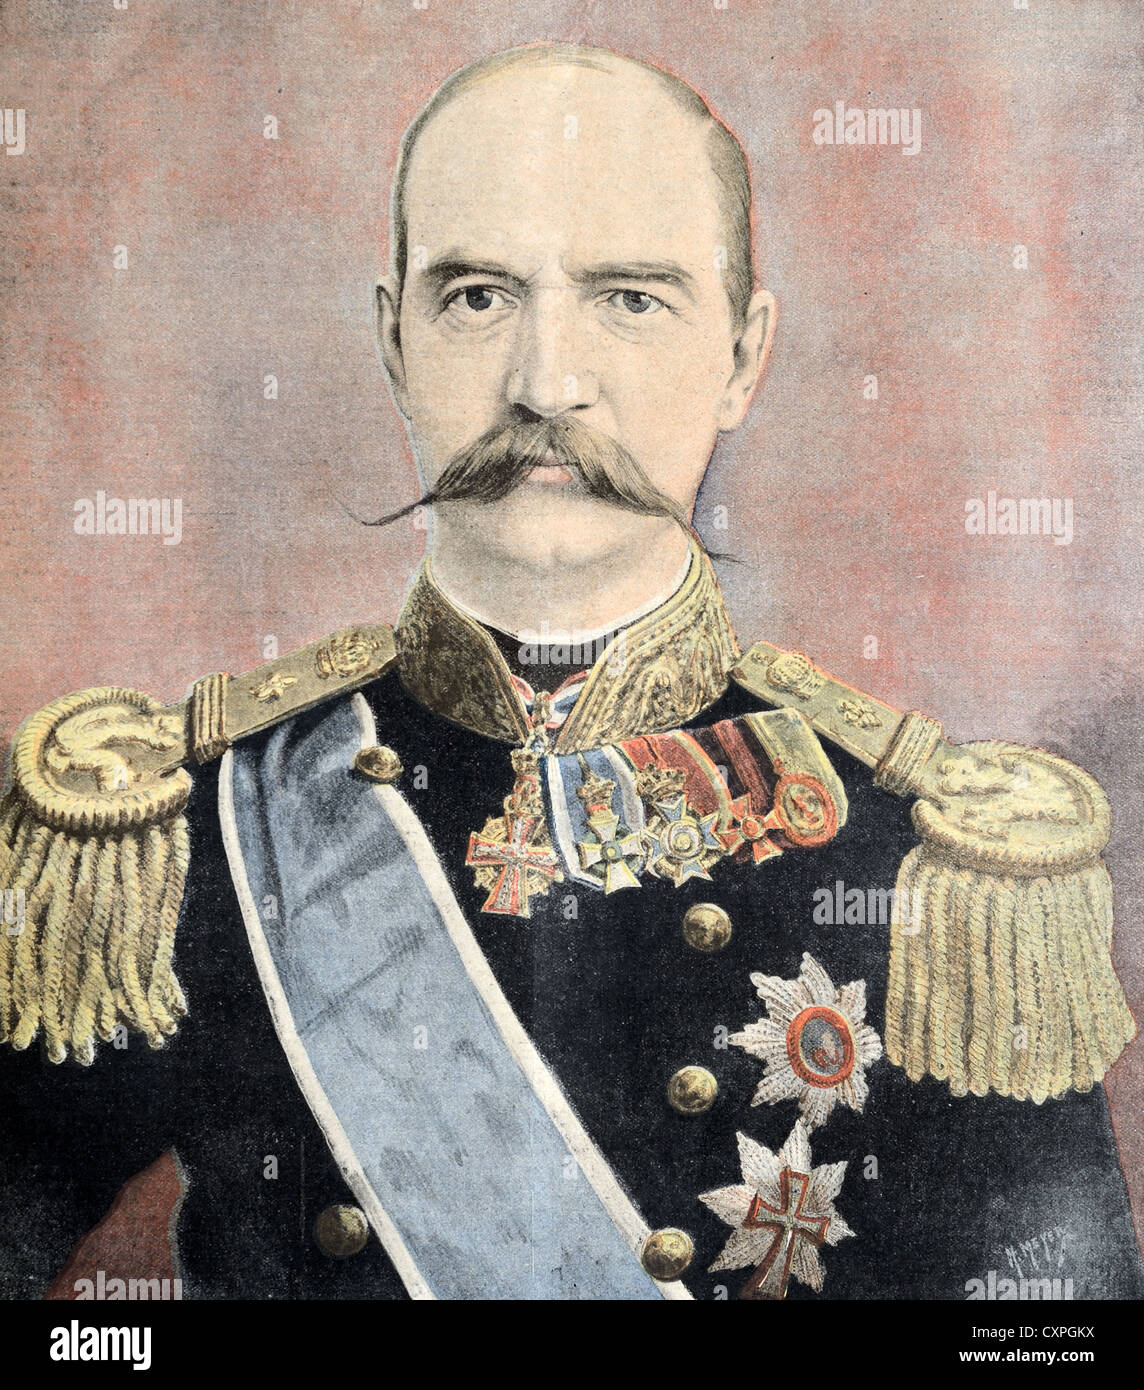 Ritratto di Re Giorgio i di Grecia (1845-1913) vestito in uniforme militare. Illustrazione vintage o incisione vecchia Foto Stock